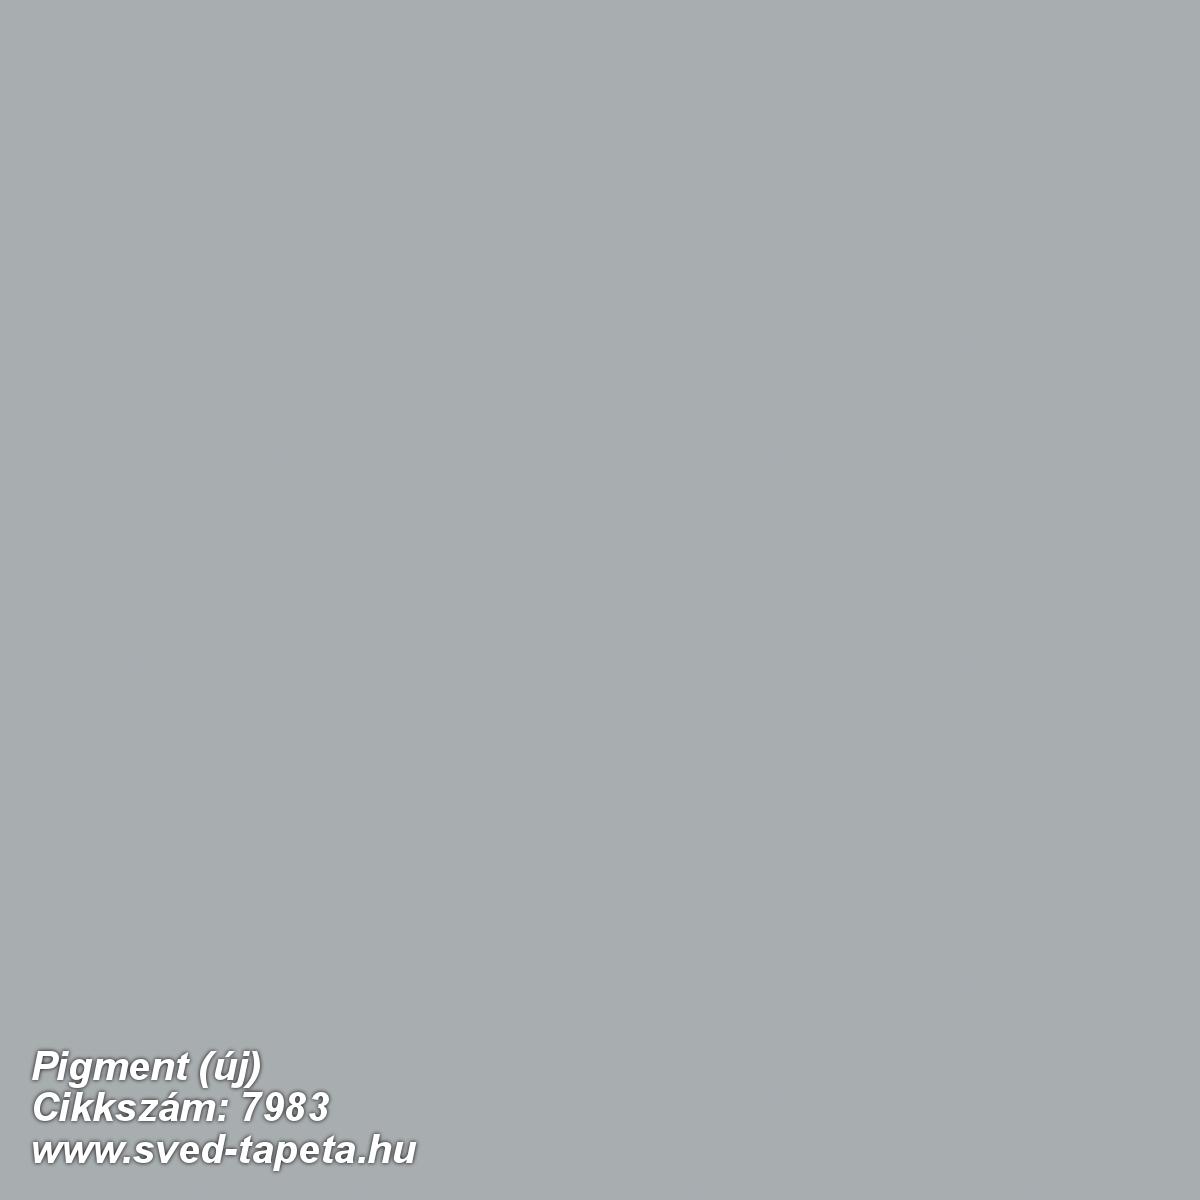 Pigment (új) 7983 cikkszámú svéd Borasgyártmányú designtapéta